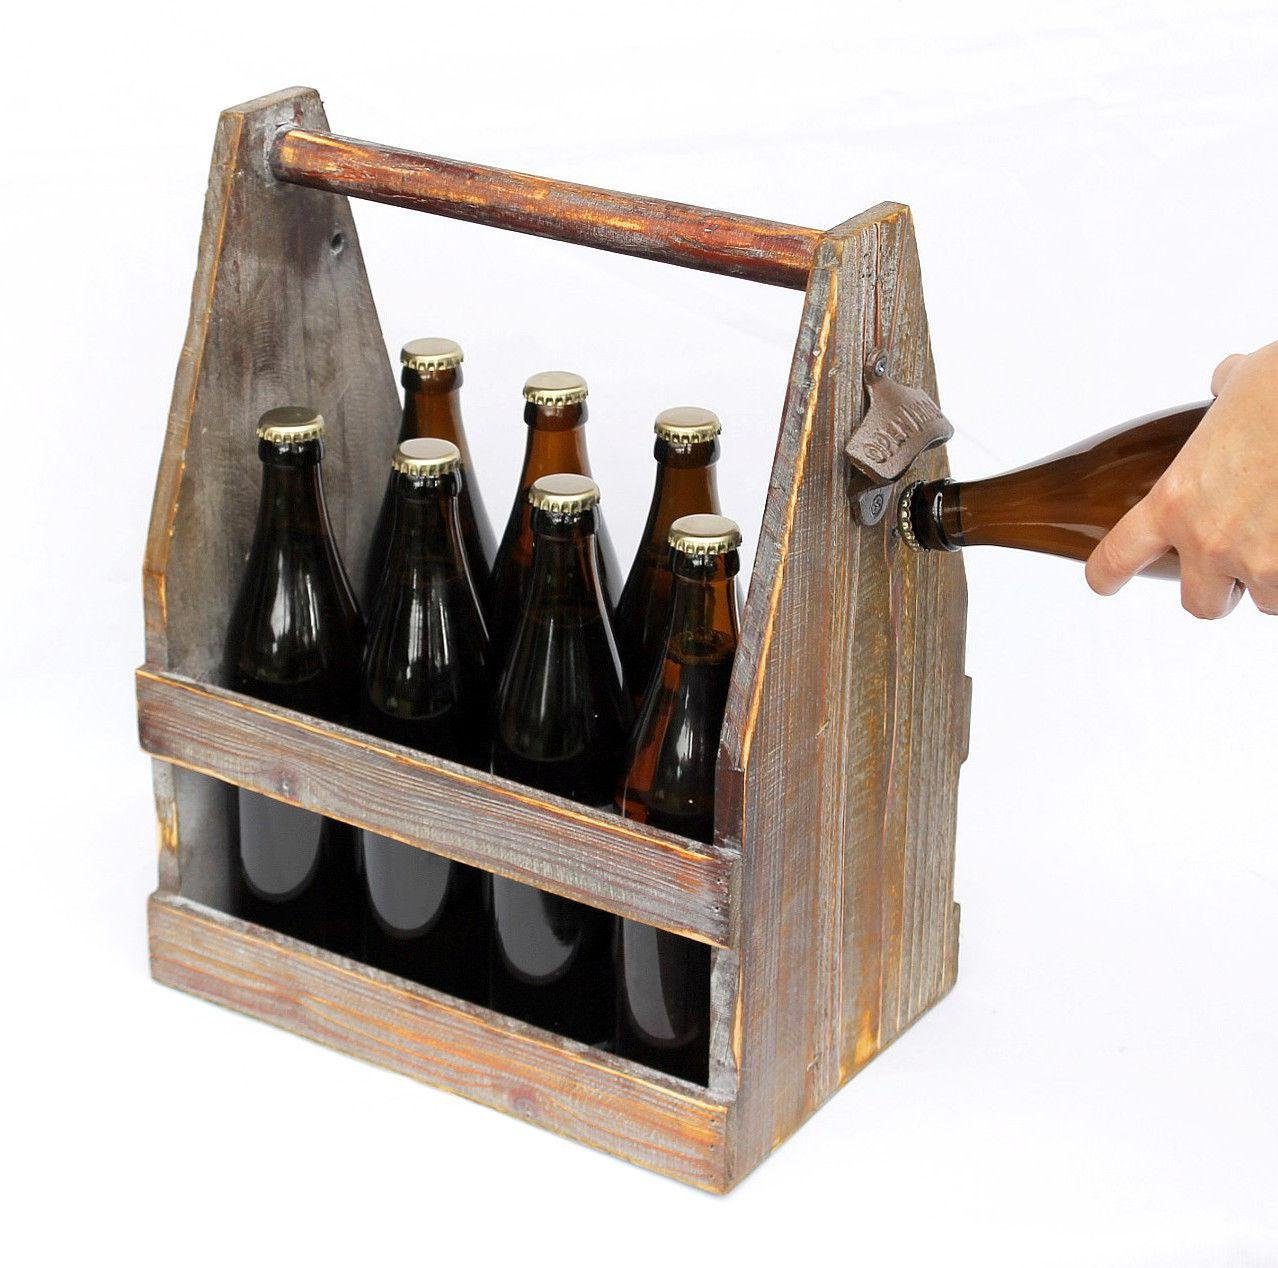 DanDiBo Flaschenkorb Bierträger aus Flaschenträger Bierkiste Flaschenöffner 5087 38 cm Holz mit